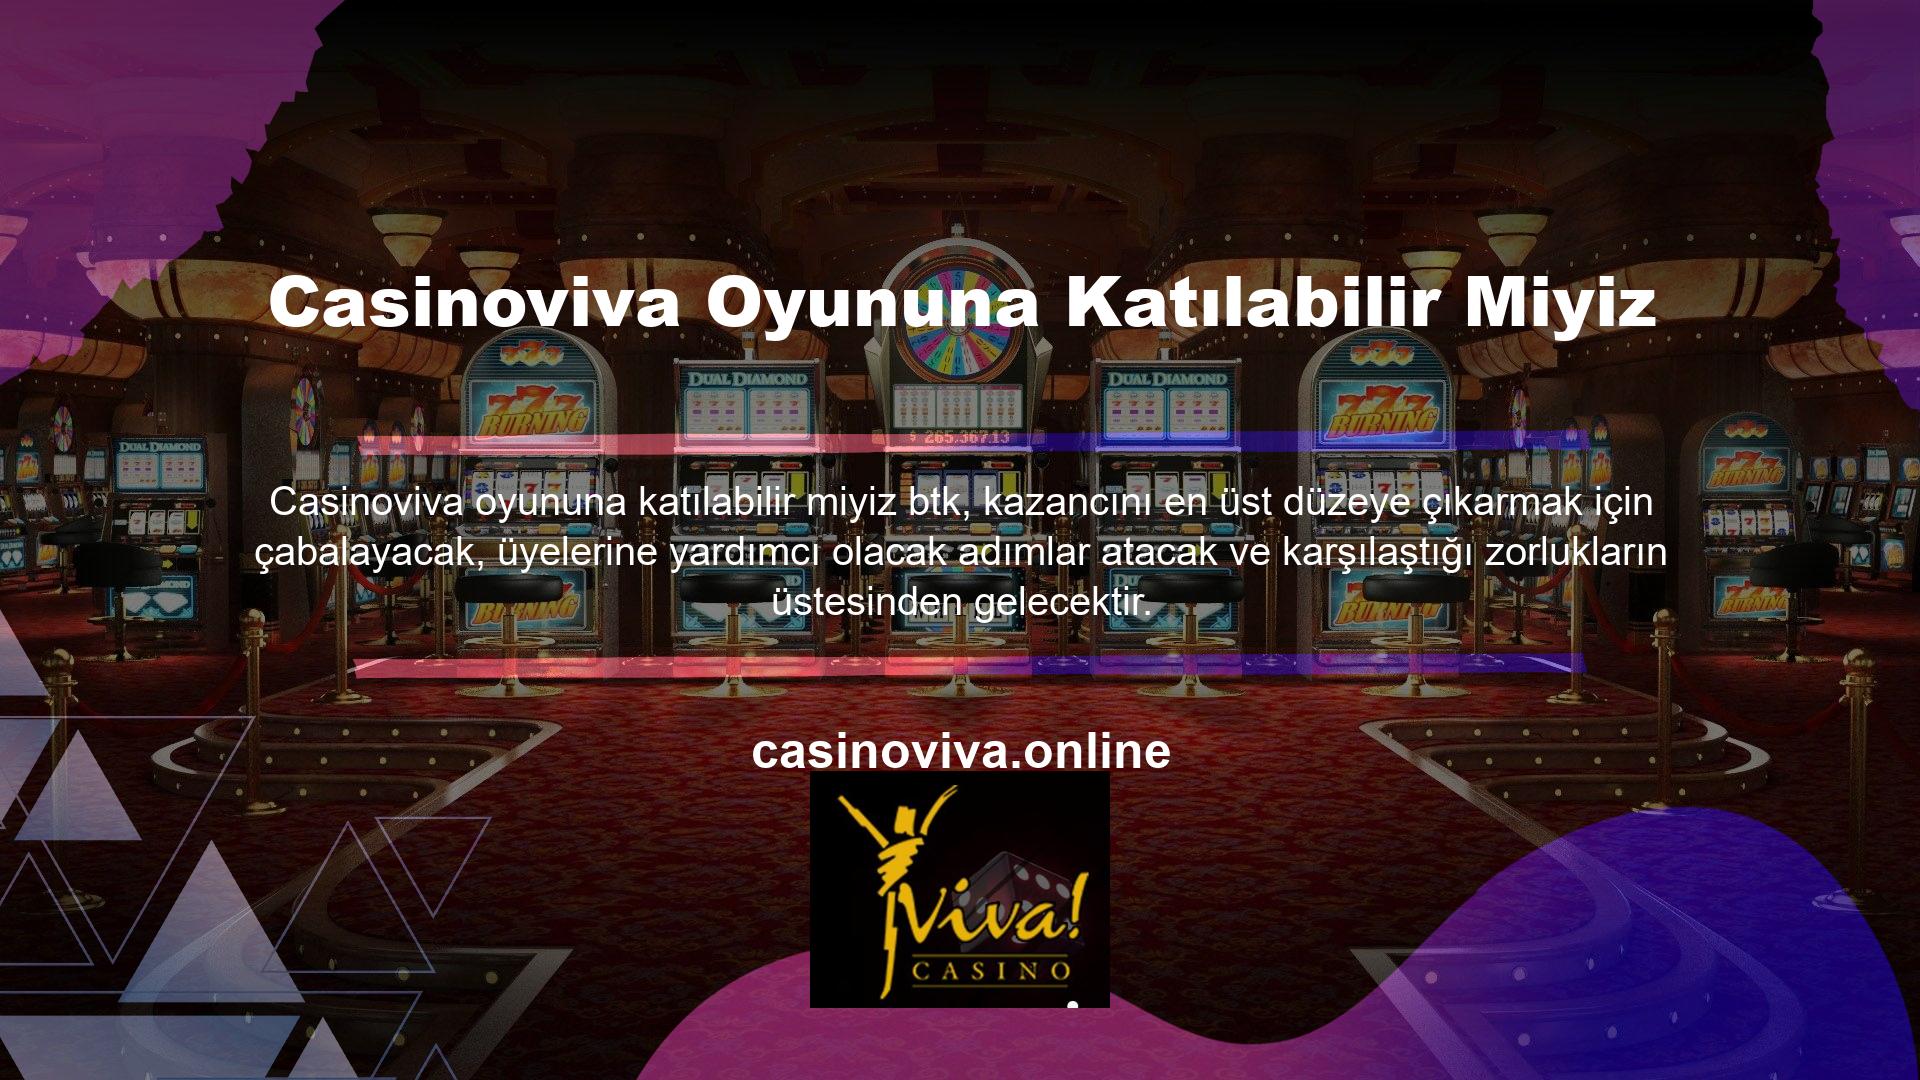 Sitenin şu anki konumu olan Casinoviva daha fazla üye çekmek ve rakiplerinden öne çıkmak için çeşitli oyun sekmelerine önemli yatırımlar yaptı